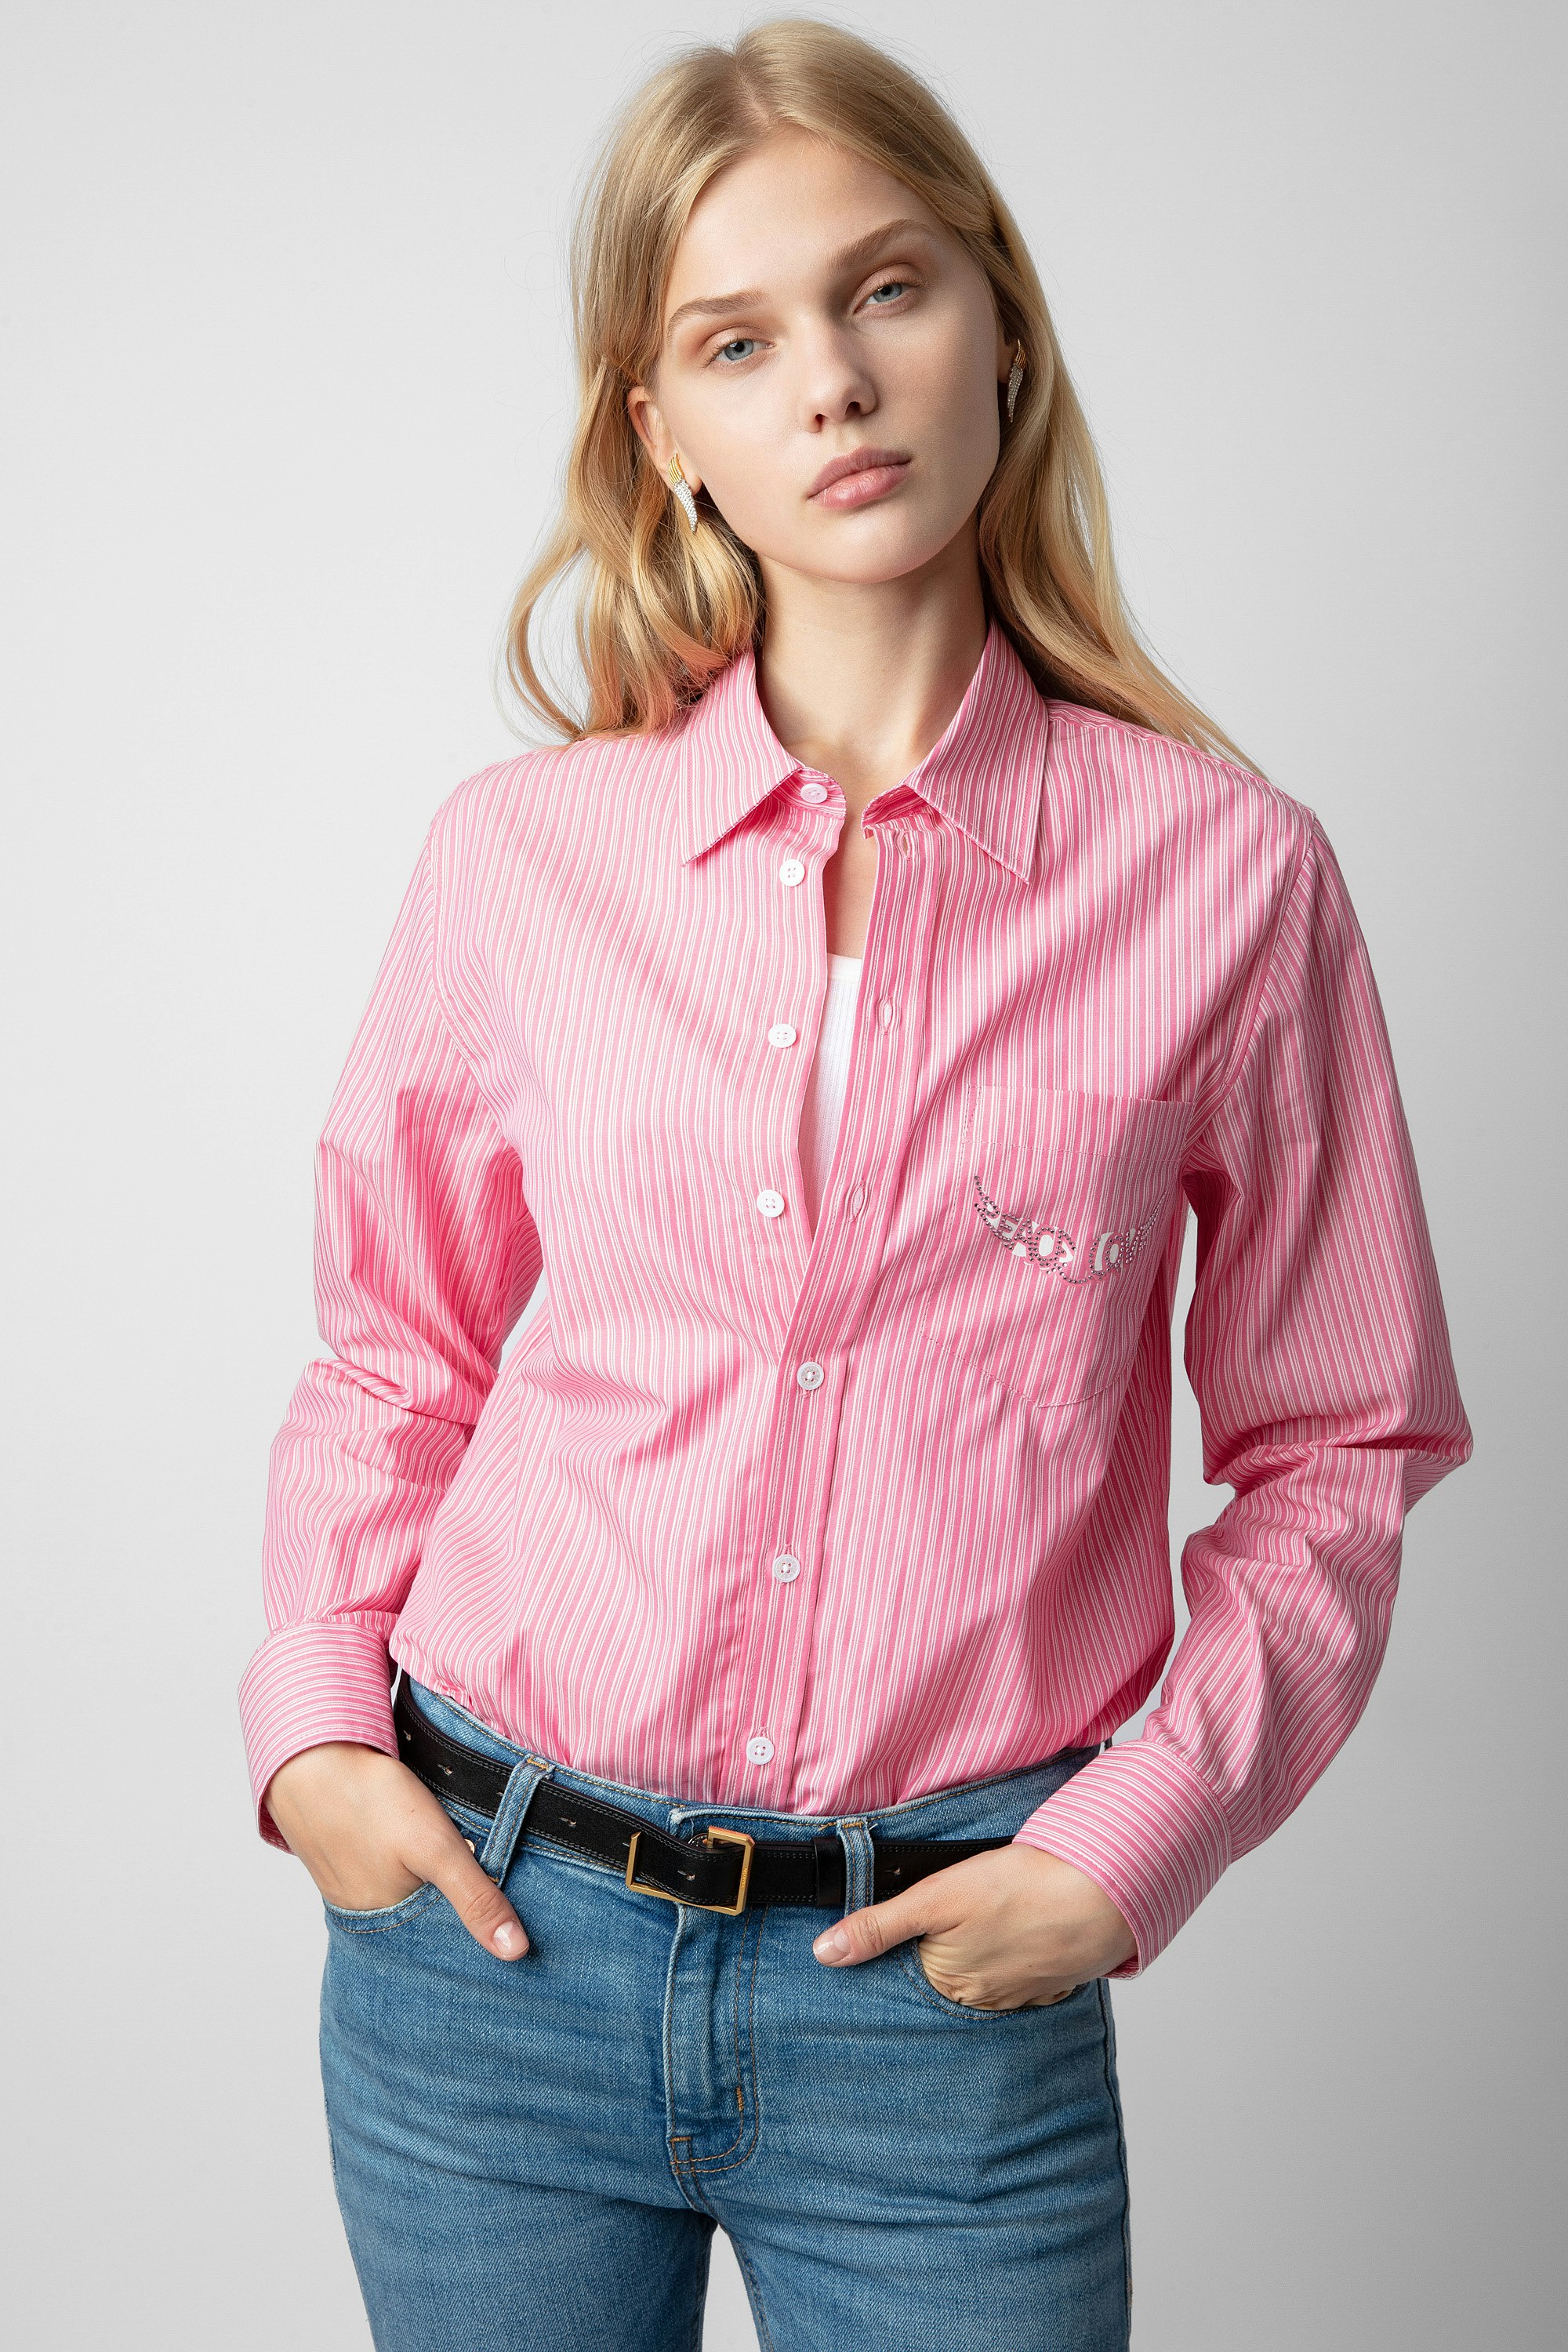 Taskiz Diamanté Shirt - Women’s striped pink cotton shirt with wing-shaped “Peace & Love” diamanté slogan.